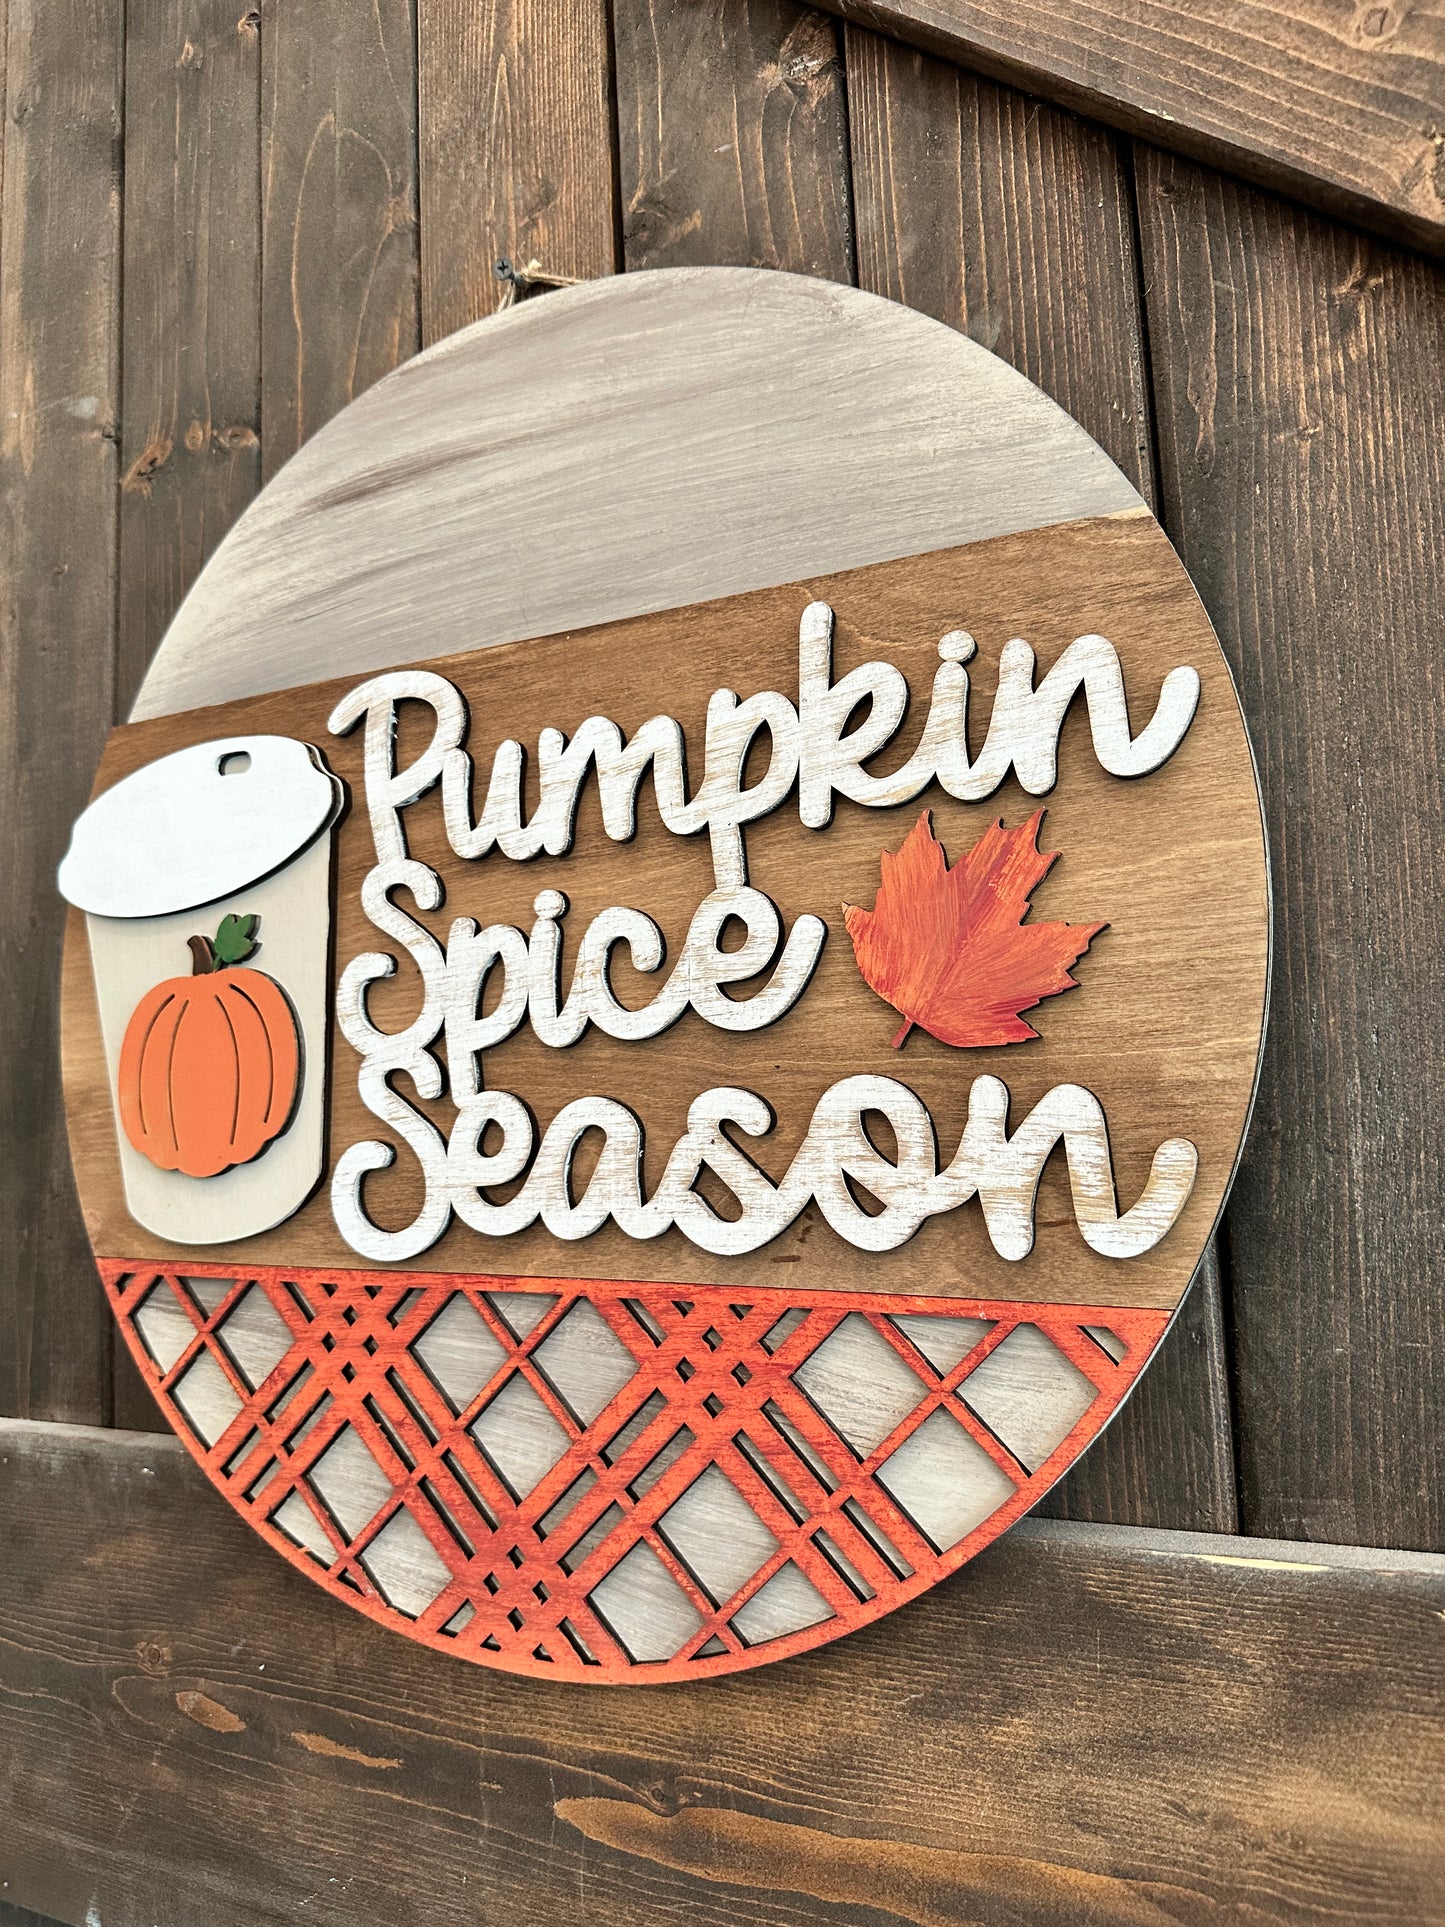 PAINTED Pumpkin Spice Season 3D Door Hanger P02793